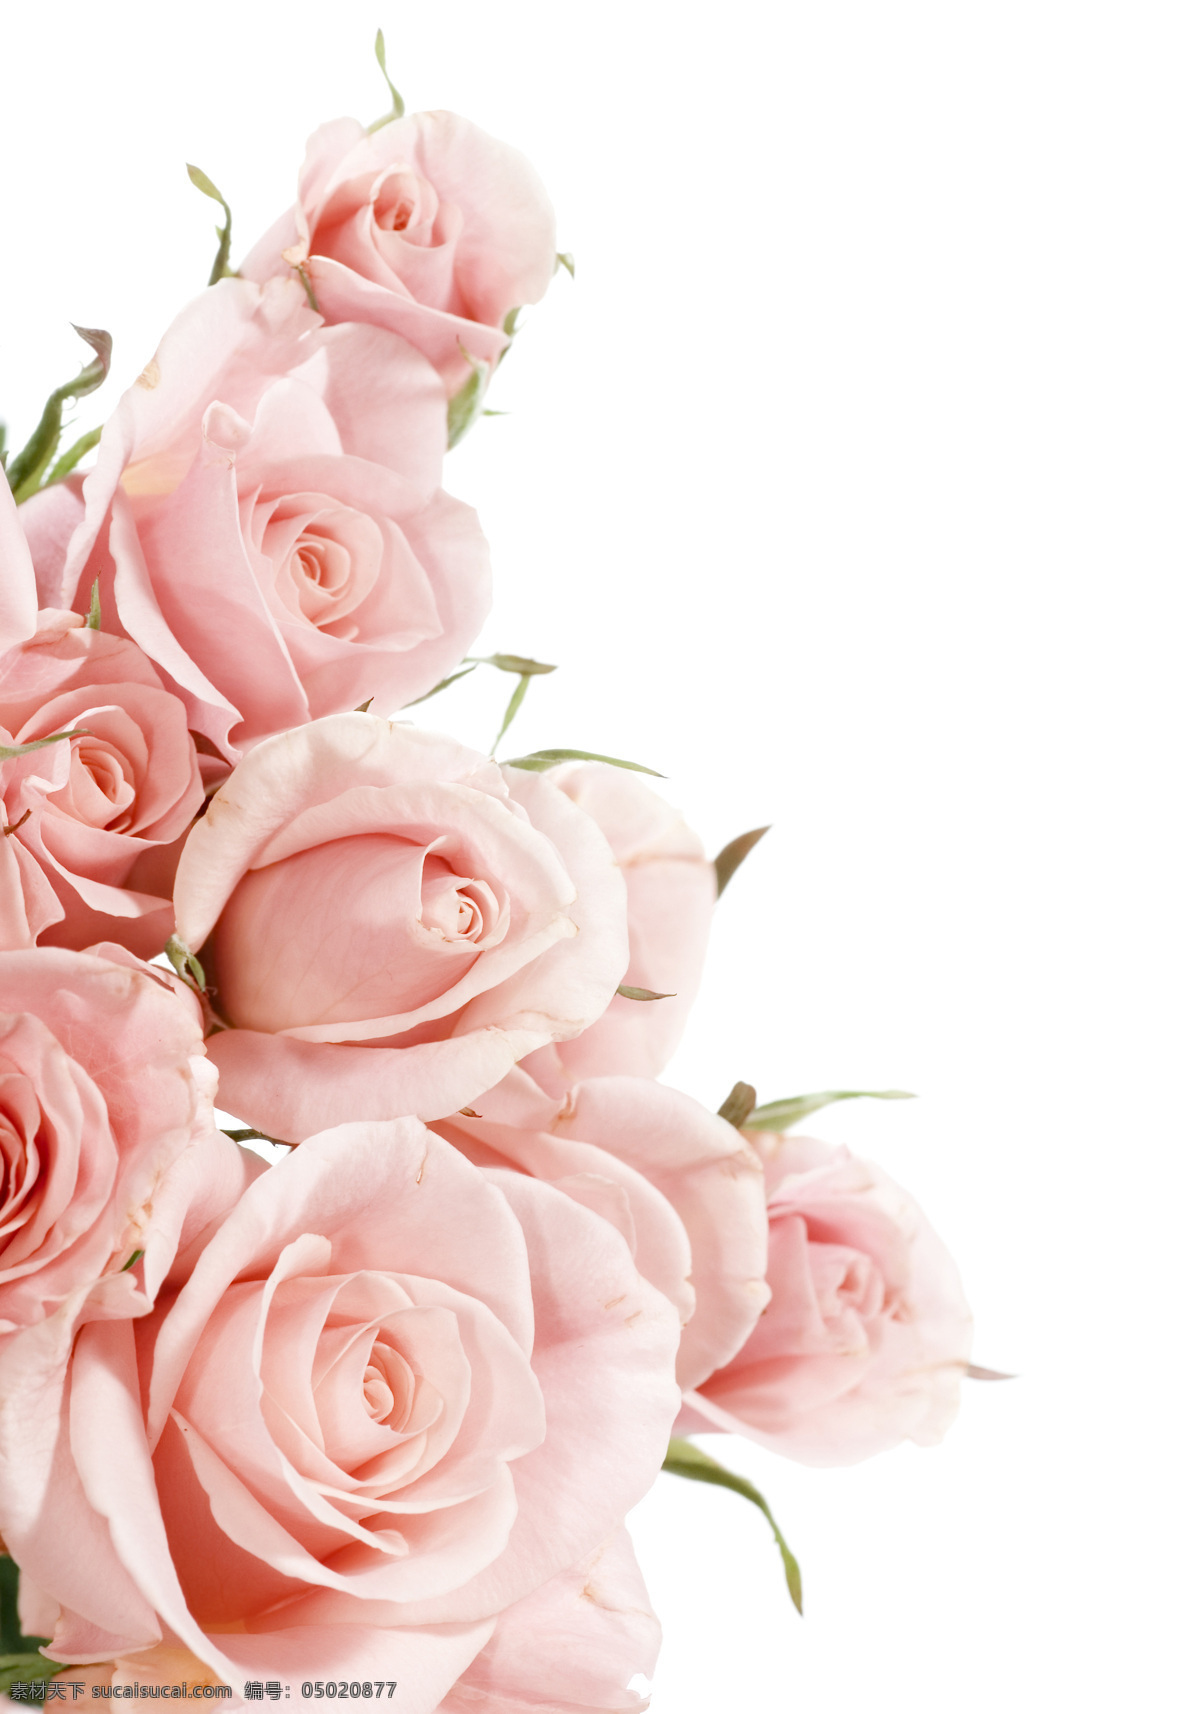 粉色 玫瑰花 拍摄 素材图片 花束 玫瑰 植物 花卉 装饰 鲜花 红色 浪漫 红玫瑰 束鲜花 红色玫瑰 玫瑰花束 生物世界 花草